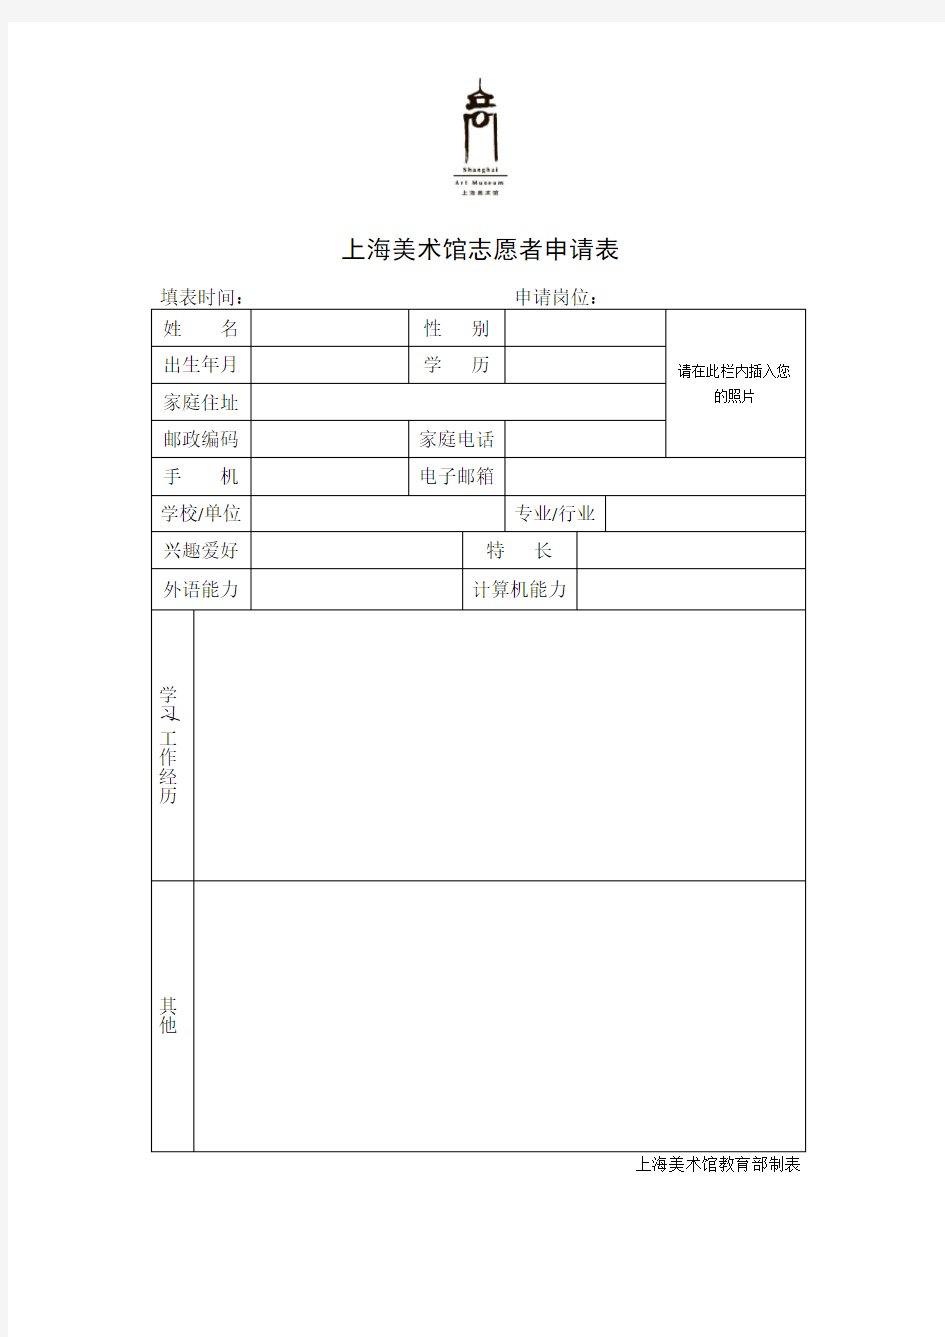 上海美术馆志愿者申请表